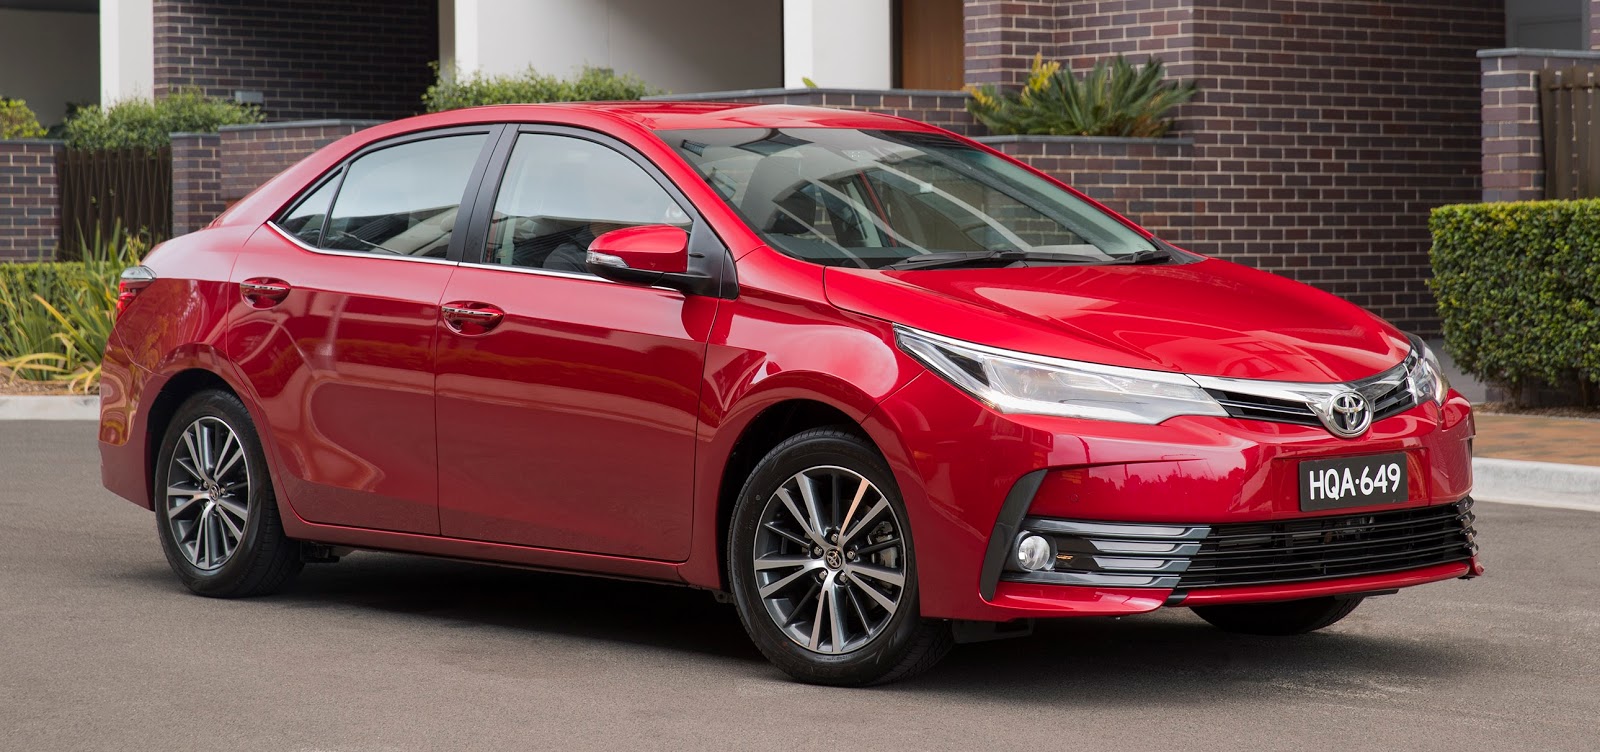 Toyota Corolla completa 50 anos com novo visual e mais segurança